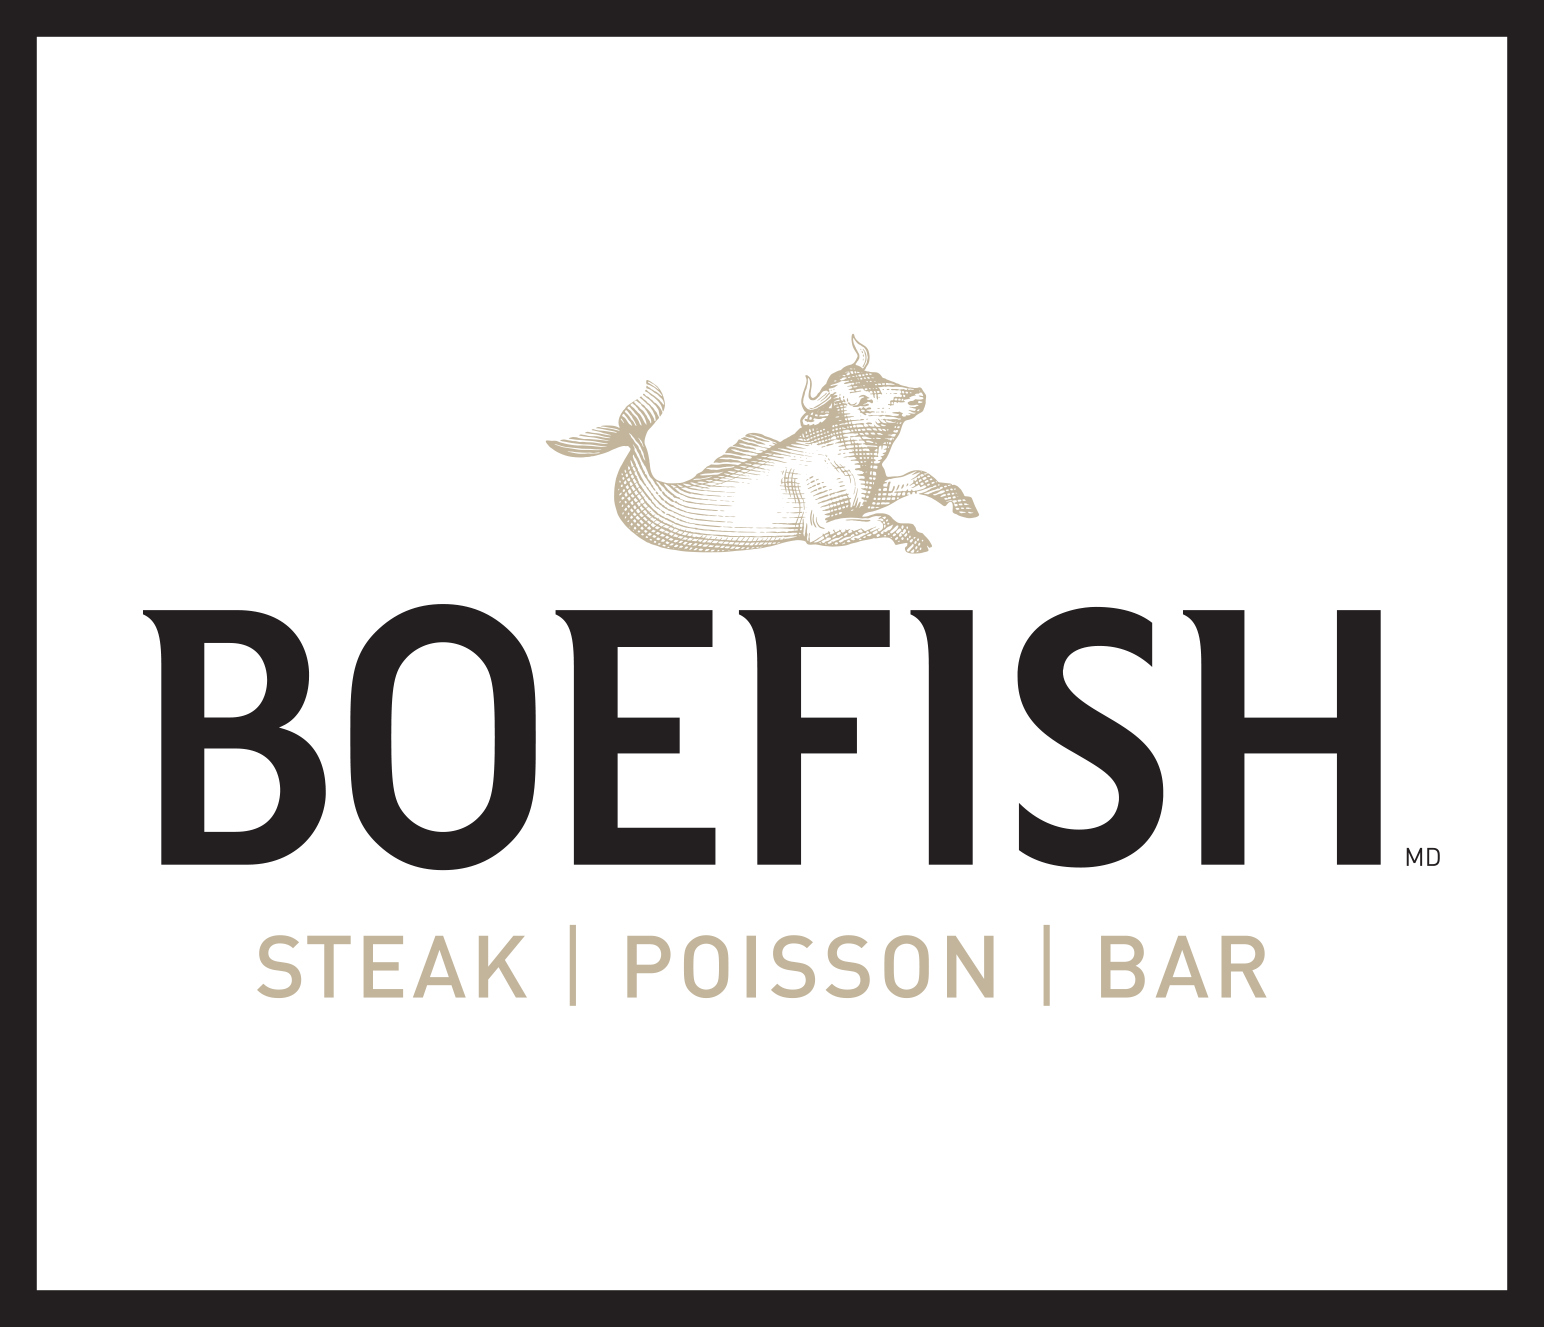 Boefish